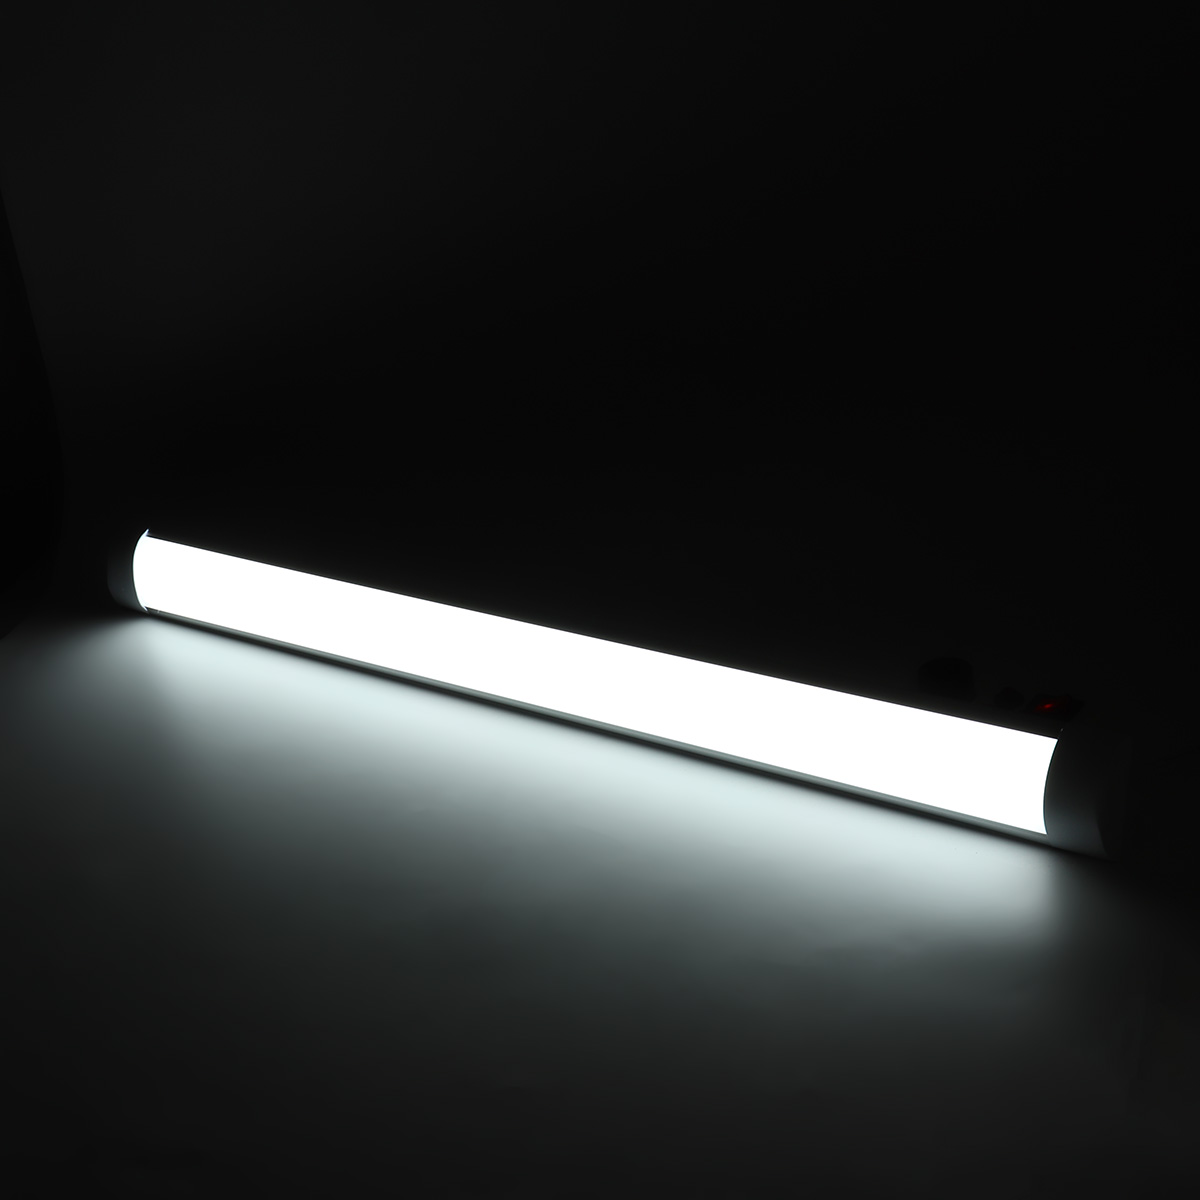 2 x90cm 30W LED Batten Linear Slimline Ceiling Light Cool White fixture Tube 3ft 